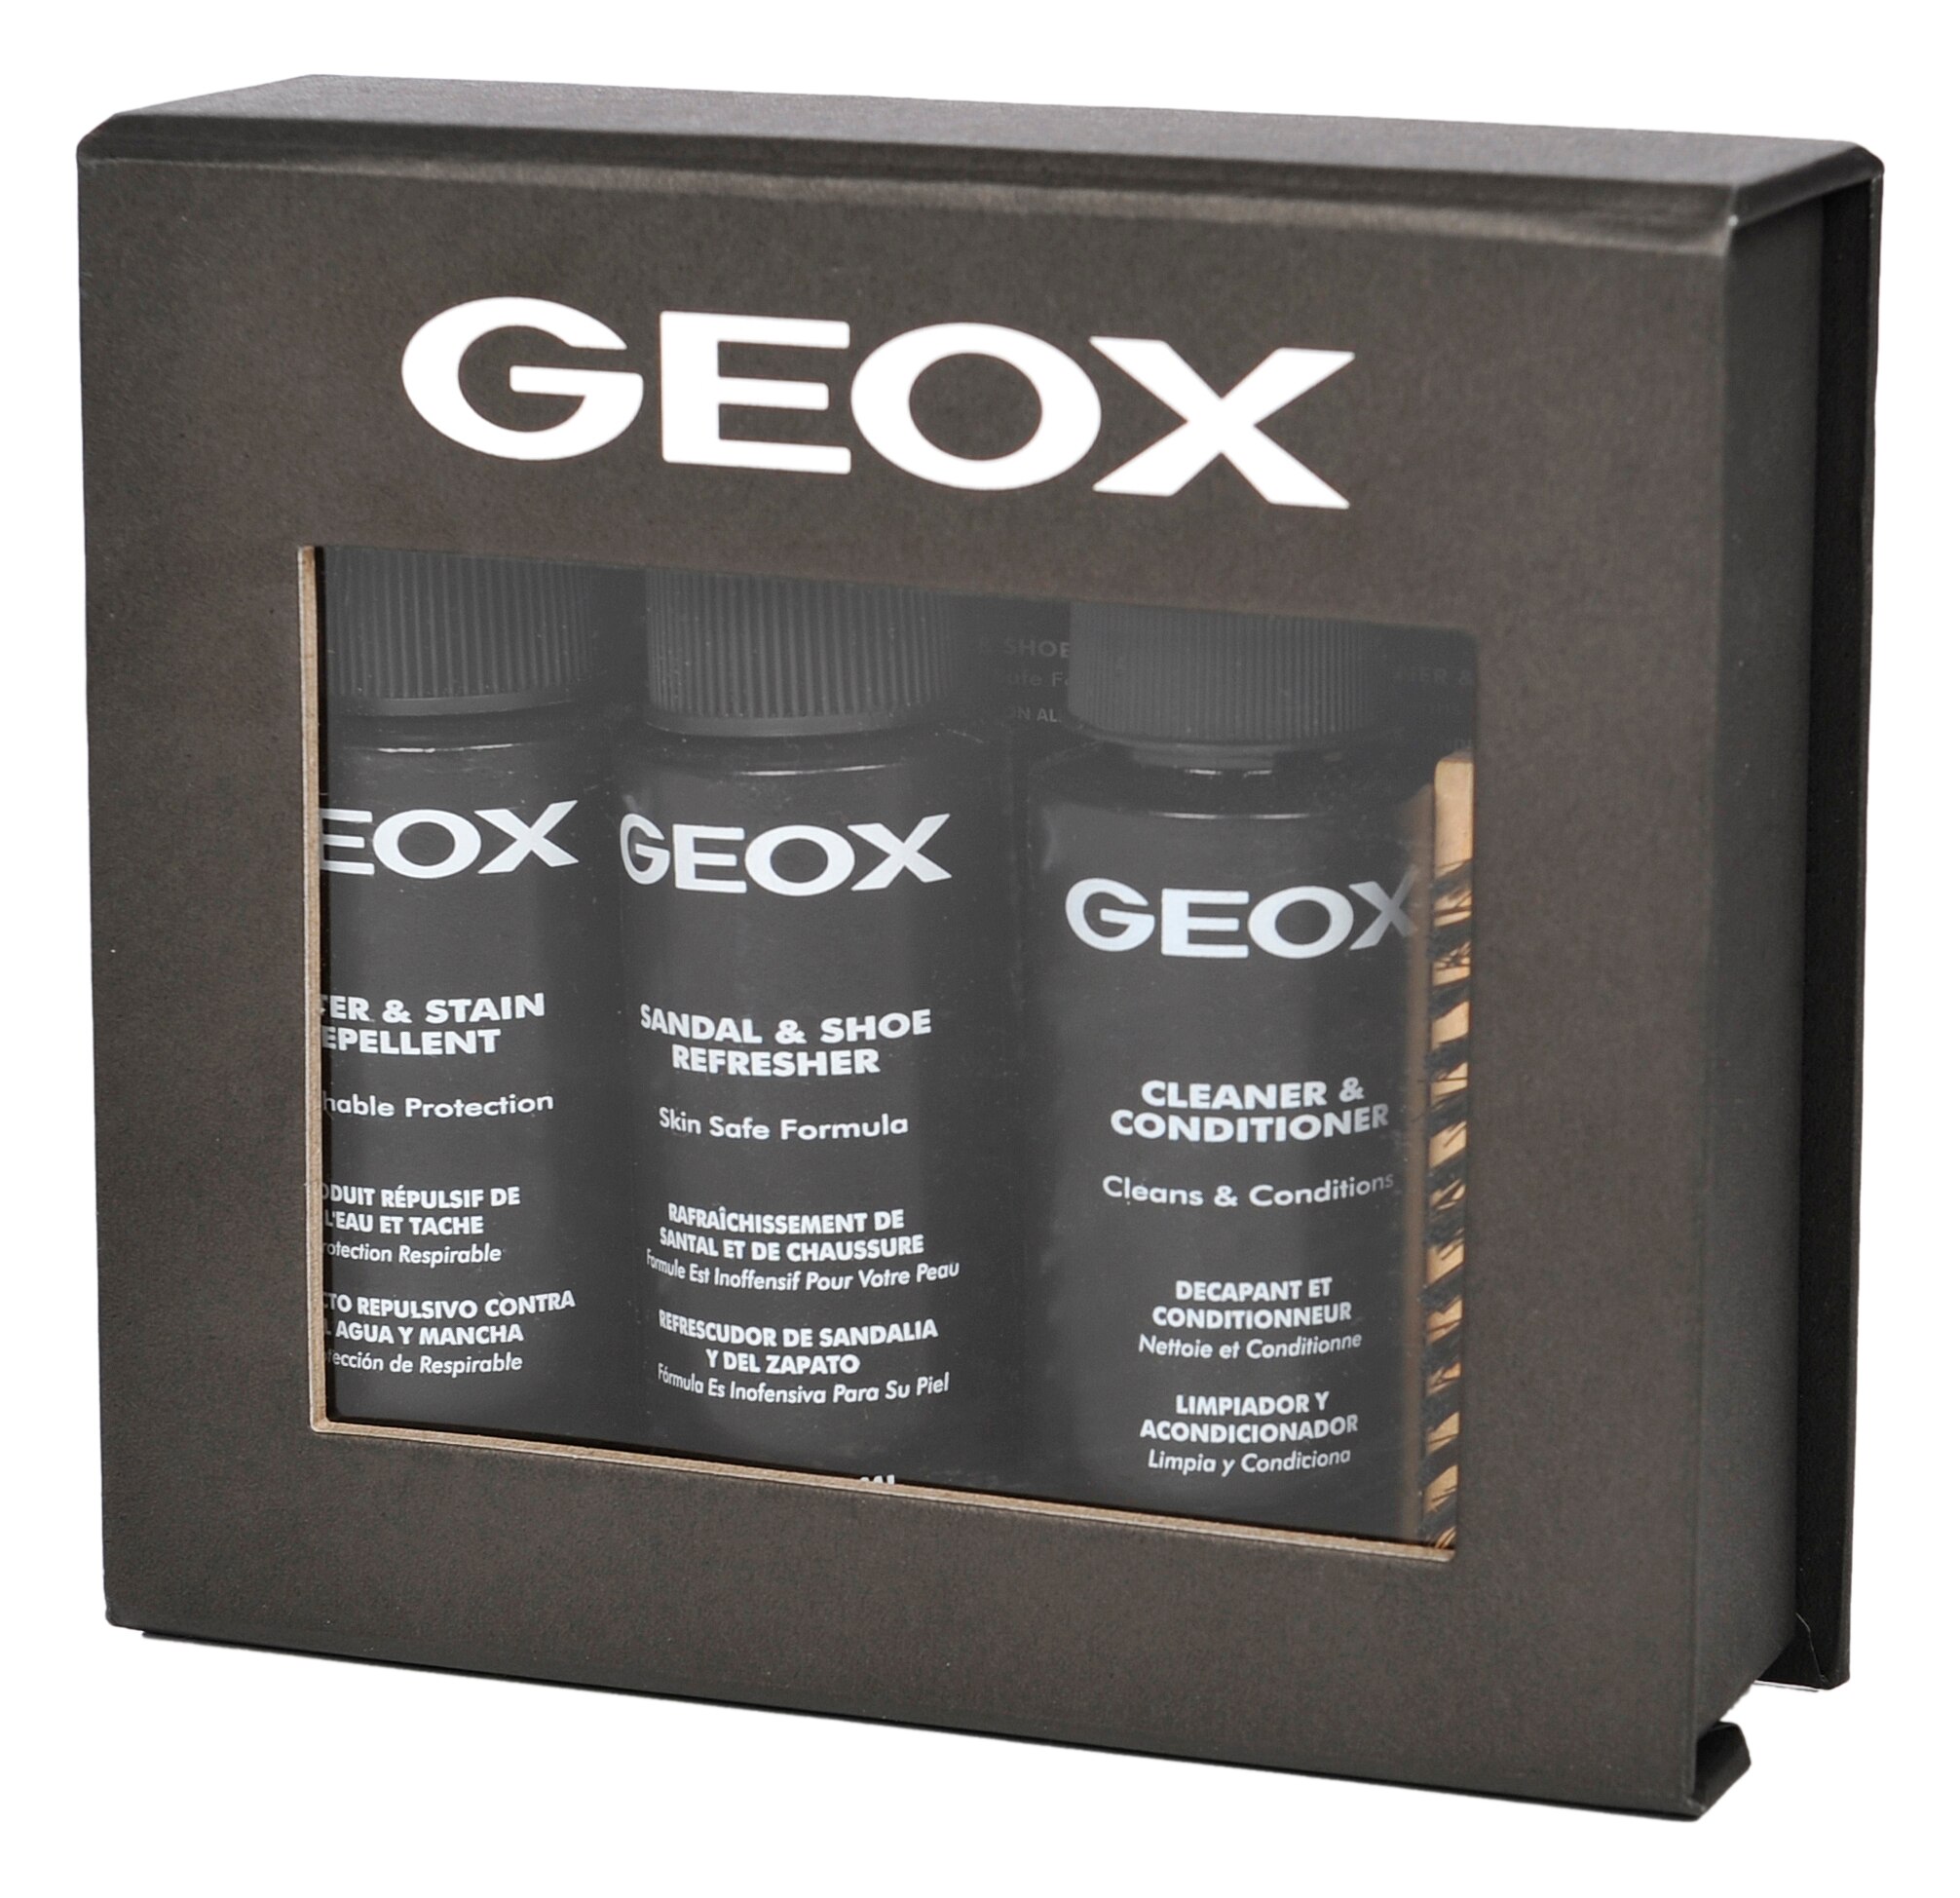 geox respira clean & care